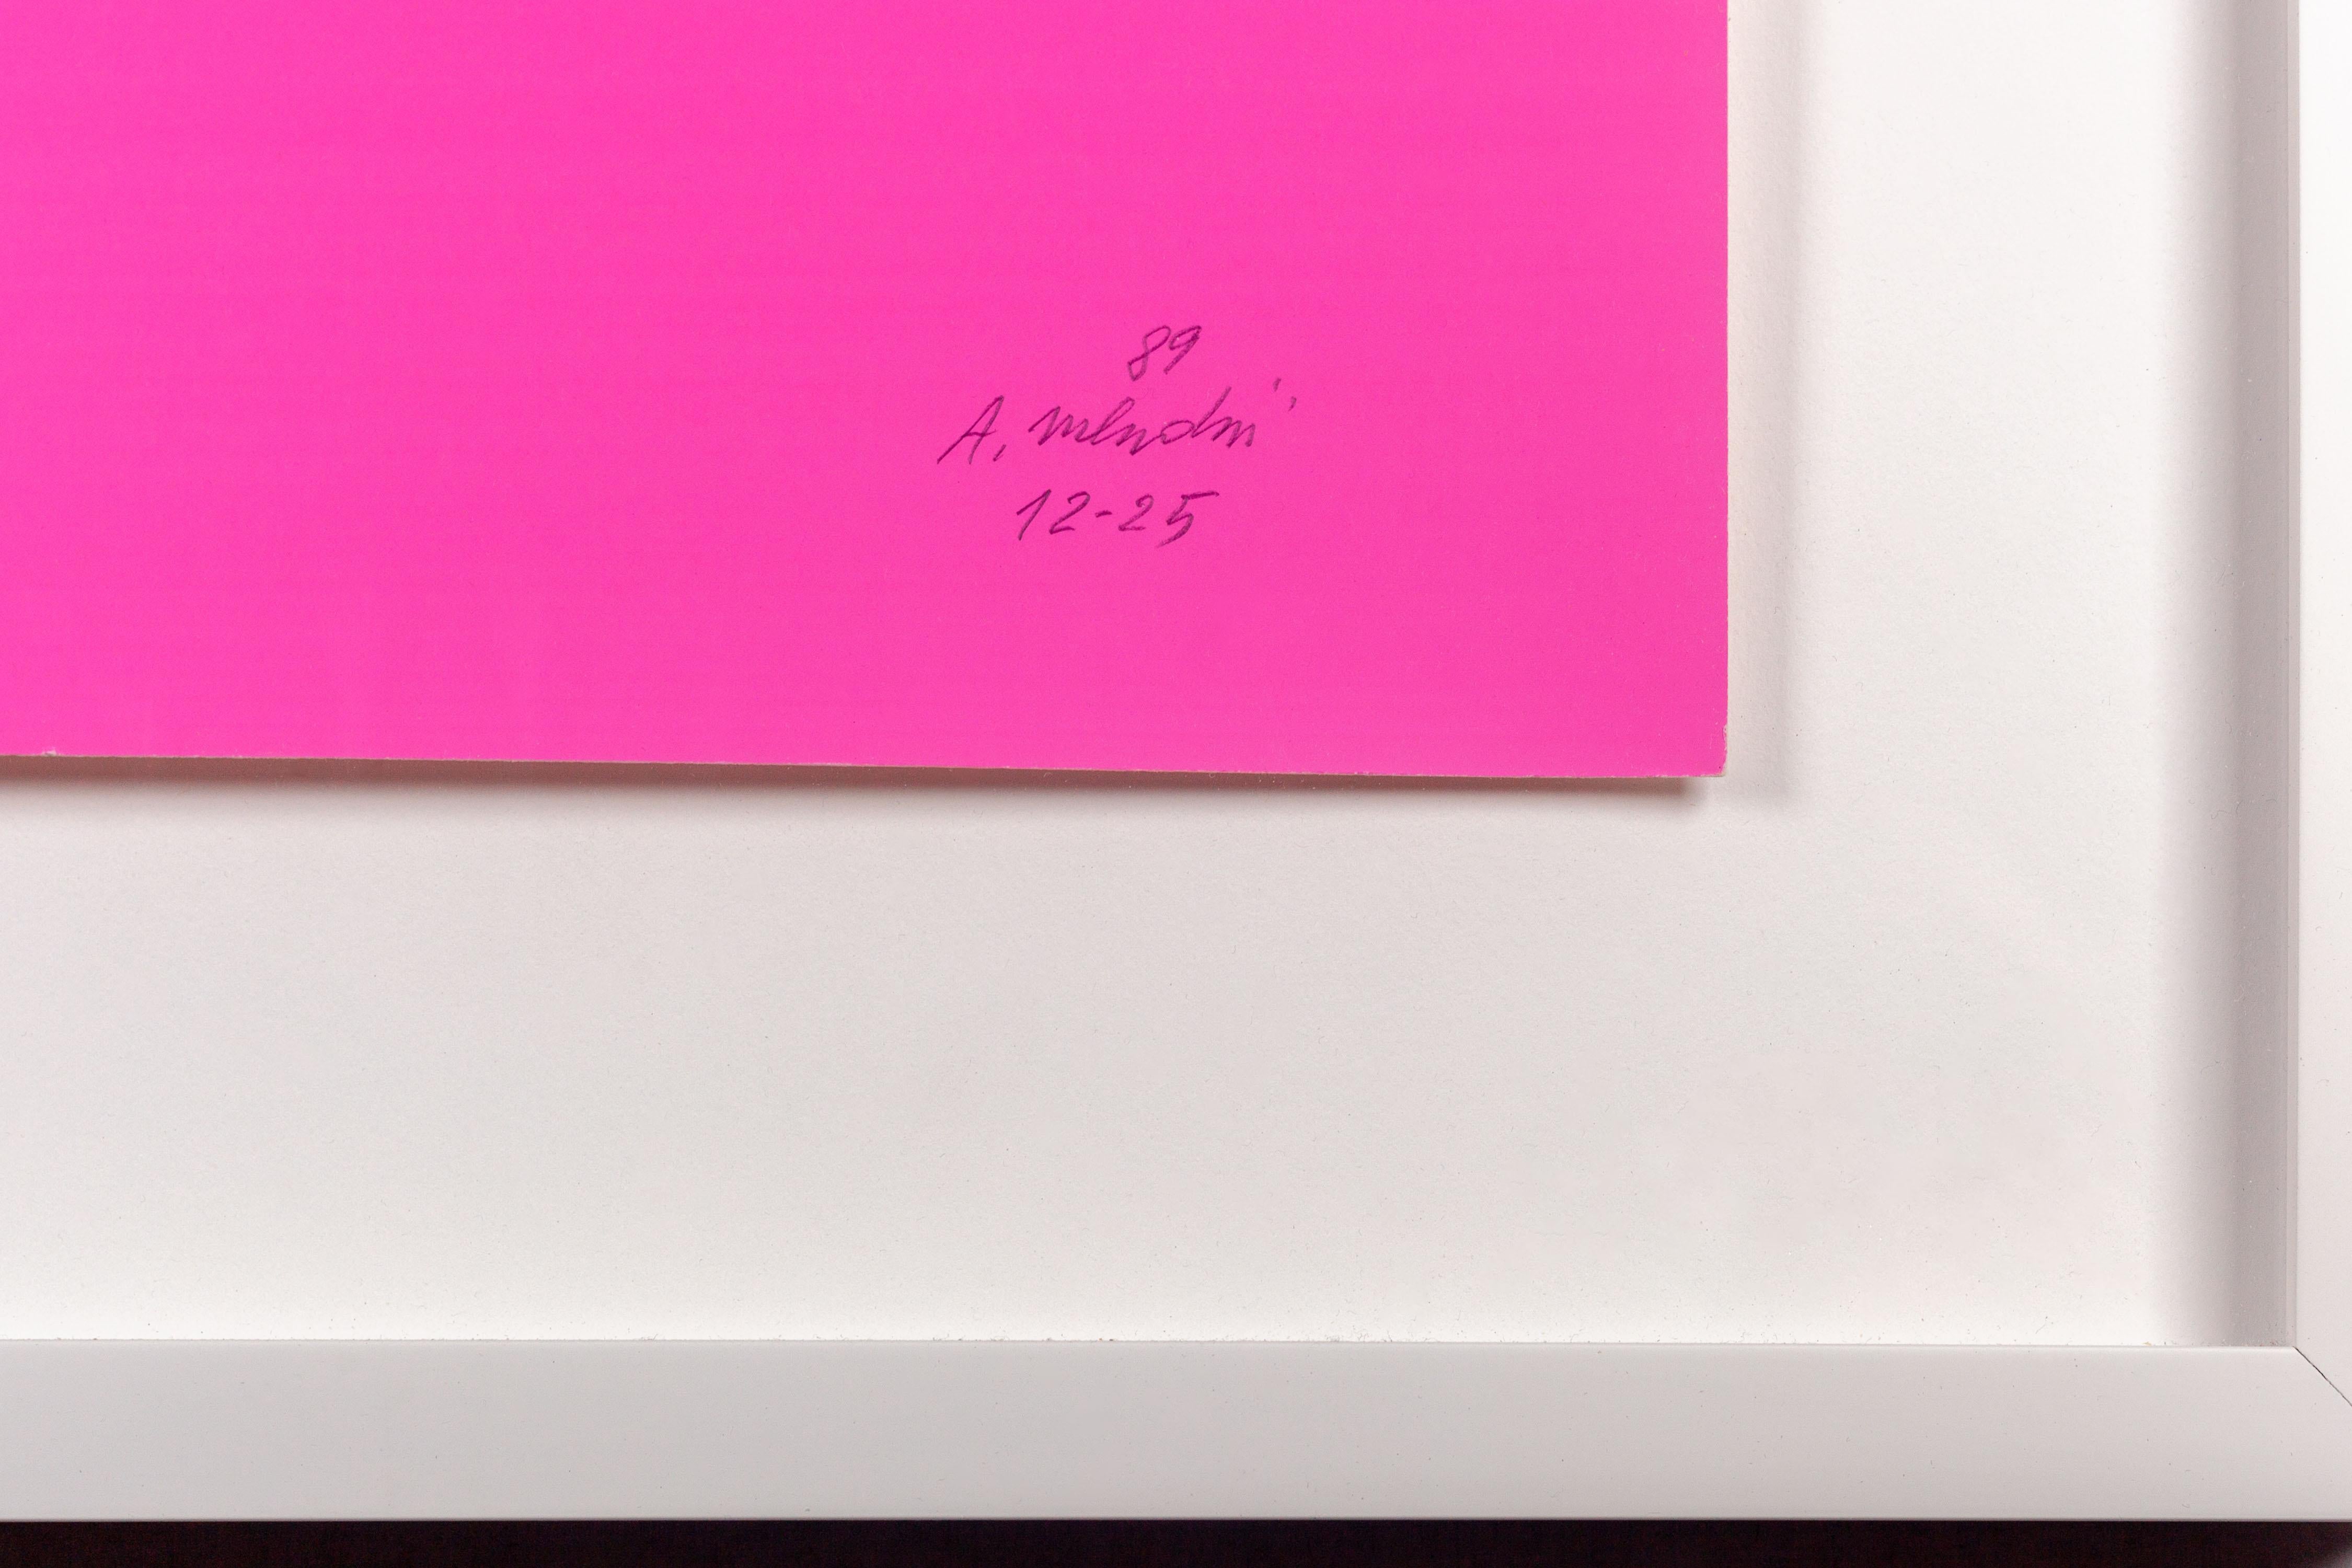 Rosa Stern-Siebdruck von Alessandro Mendini, geschaffen für das Studio Alchimia im Jahr 1989. Die Komposition wird von einem großen schwarz-weißen Stern dominiert, der vor einem leuchtend rosafarbenen Hintergrund steht, der die Figur hervorhebt. Der